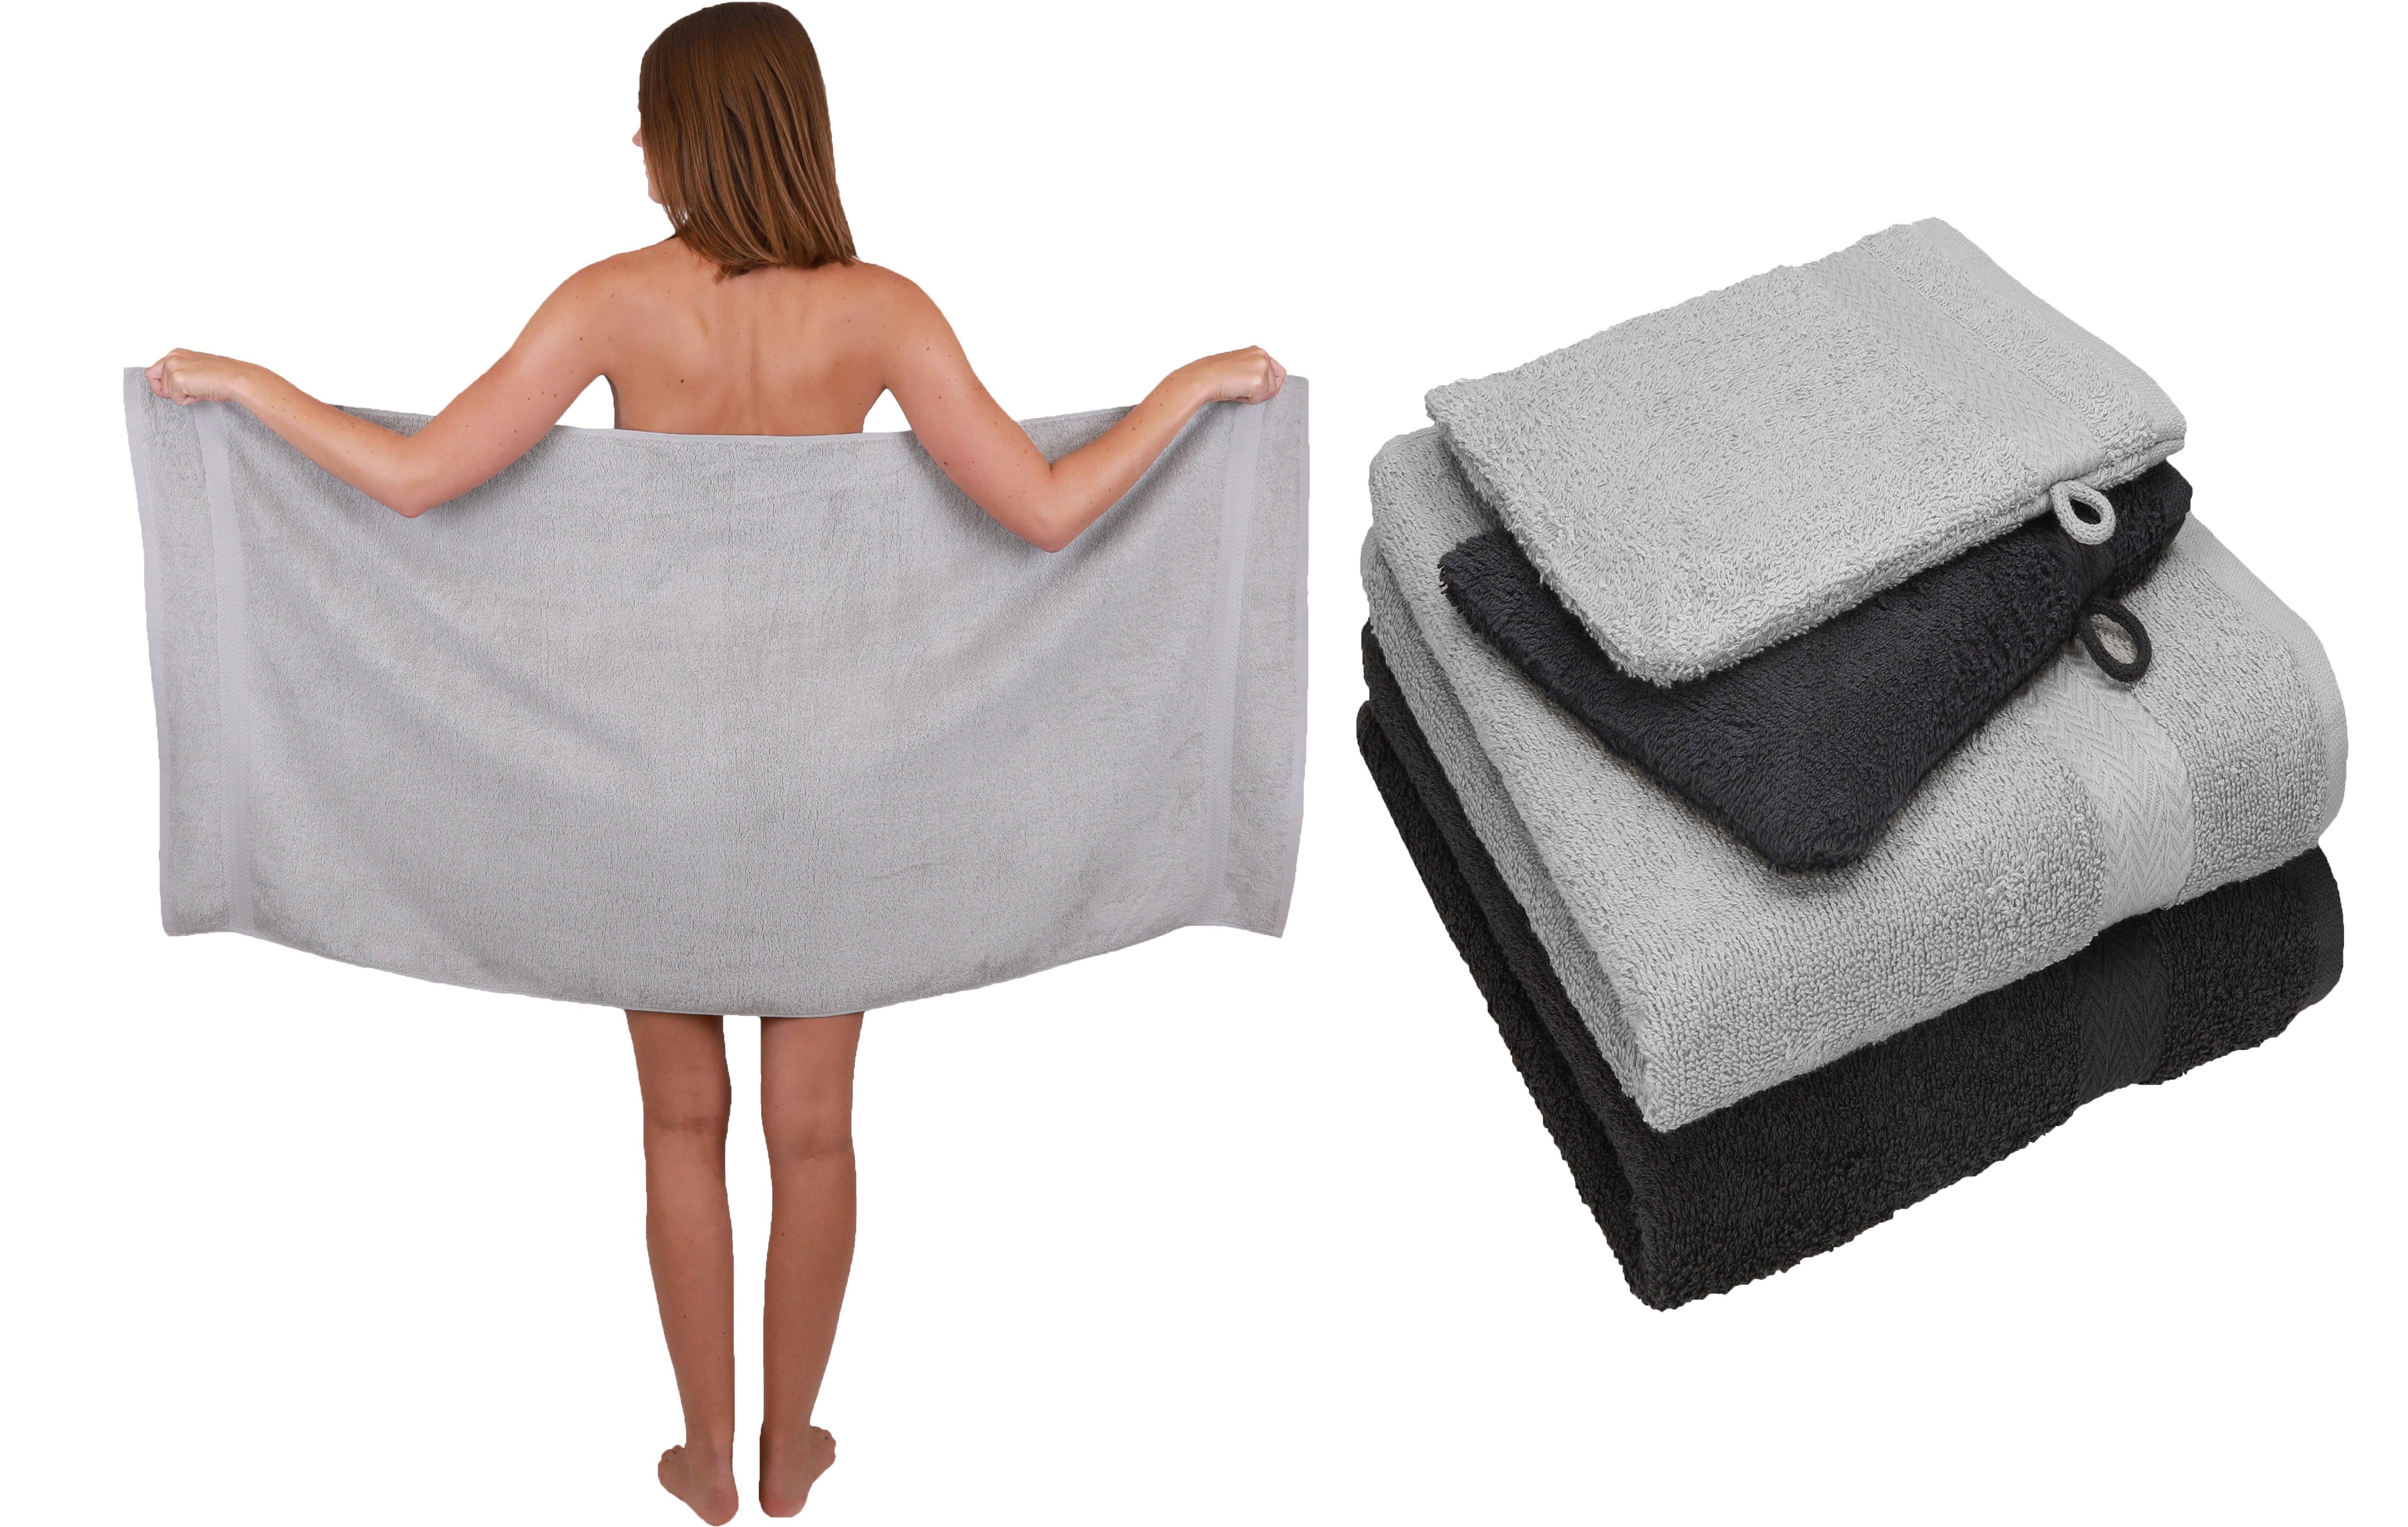 Betz Handtuch Set 5 TLG. Baumwolle 100% 100% Waschhandschuhe, grau 2 Handtücher silber Single Handtuch 1 grau-graphit Duschtuch Set Baumwolle Pack 2